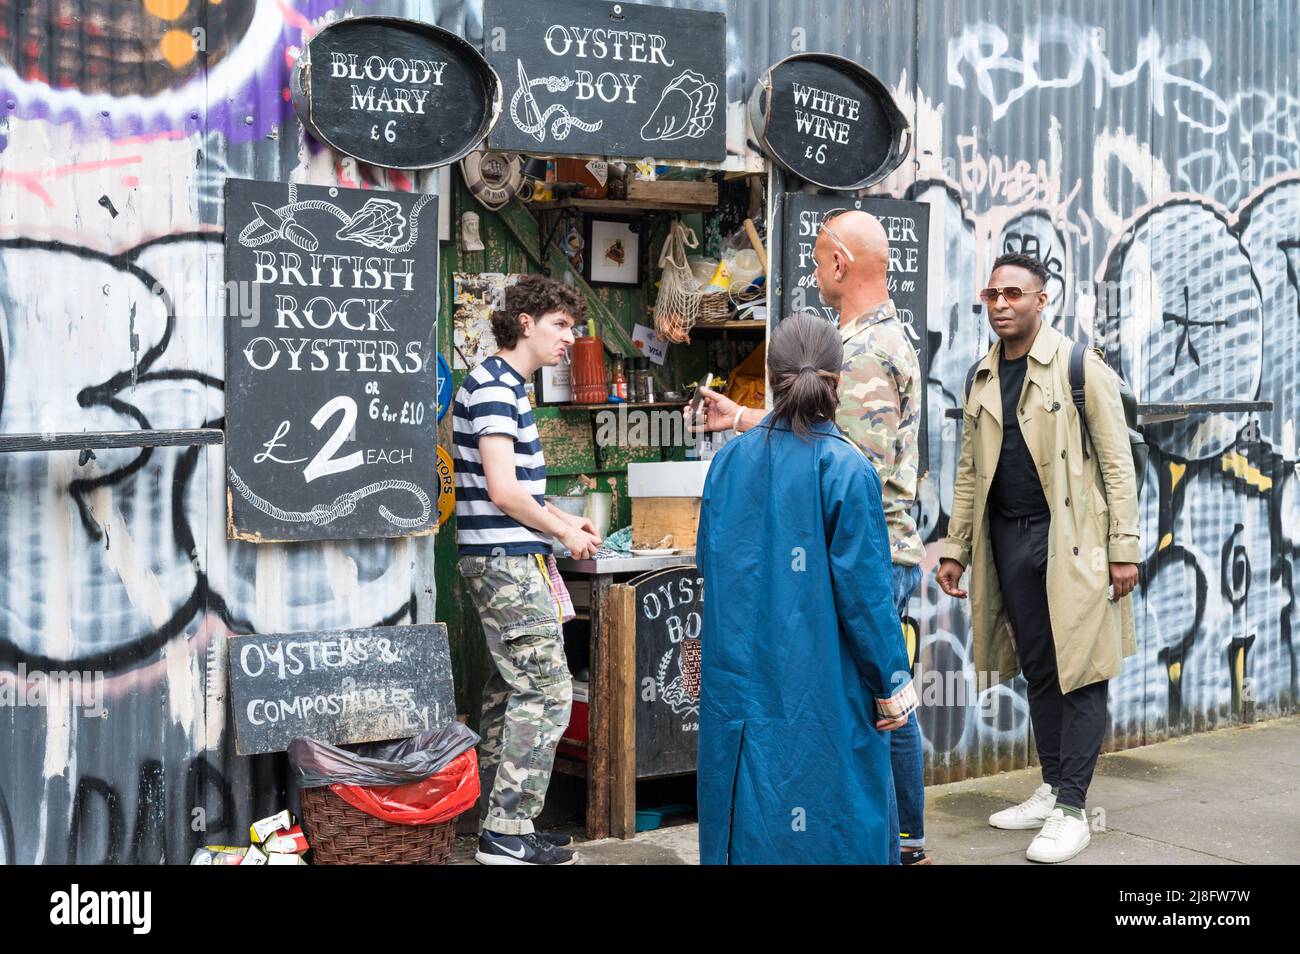 Ladenbesitzer und Kunde im Gespräch bei Oyster Boy, einem Austern-Verkaufsgeschäft in der Ezra Street, London E2, England, Großbritannien Stockfoto